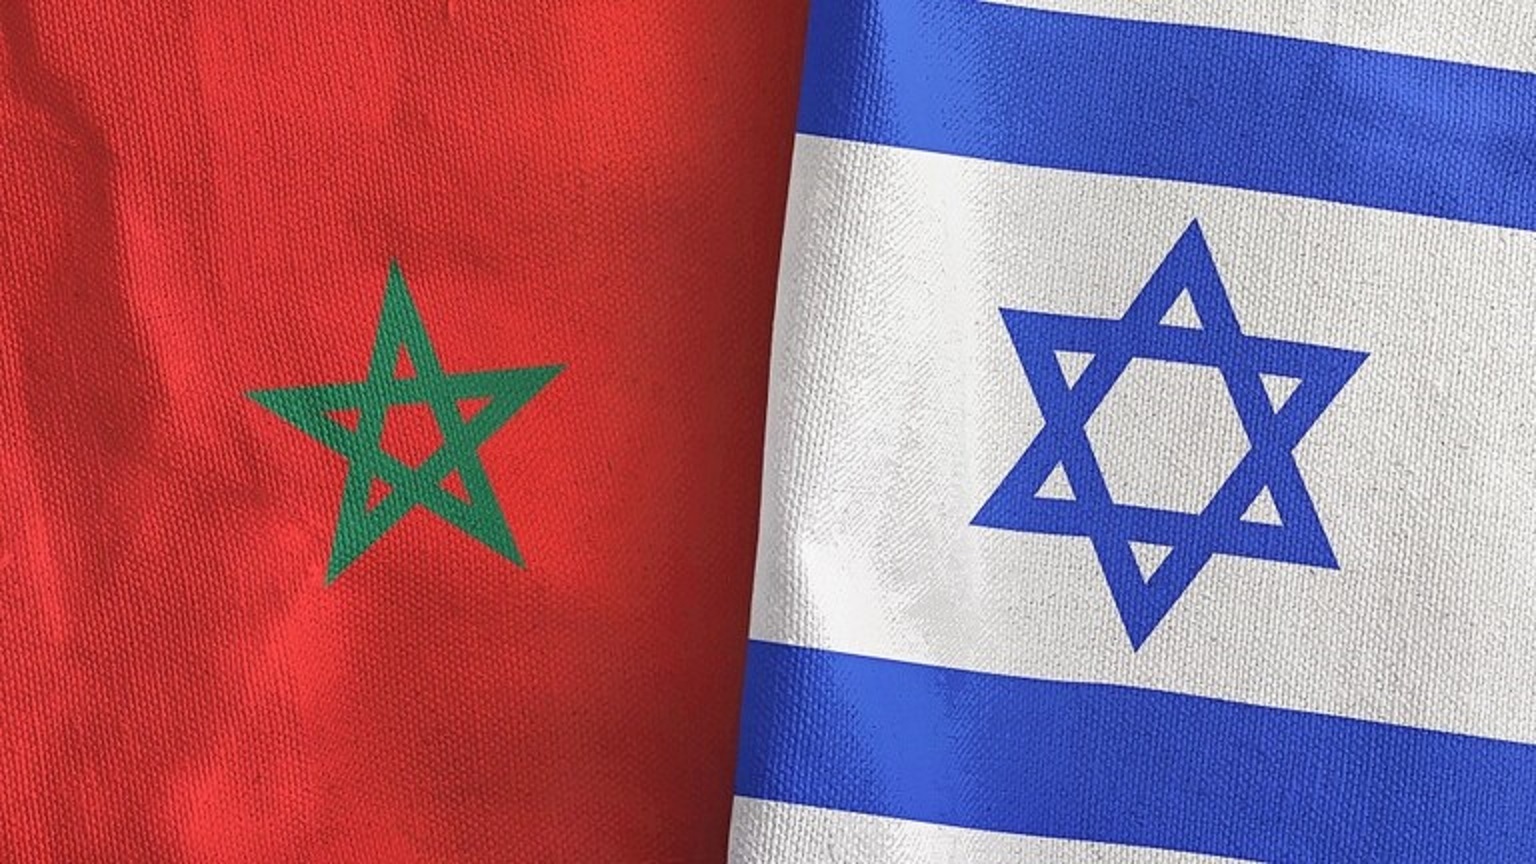 شركة إسرائيلية تعلن توقيع اتفاق مع المغرب للتنقيب عن الغاز الطبيعي وإنتاجه